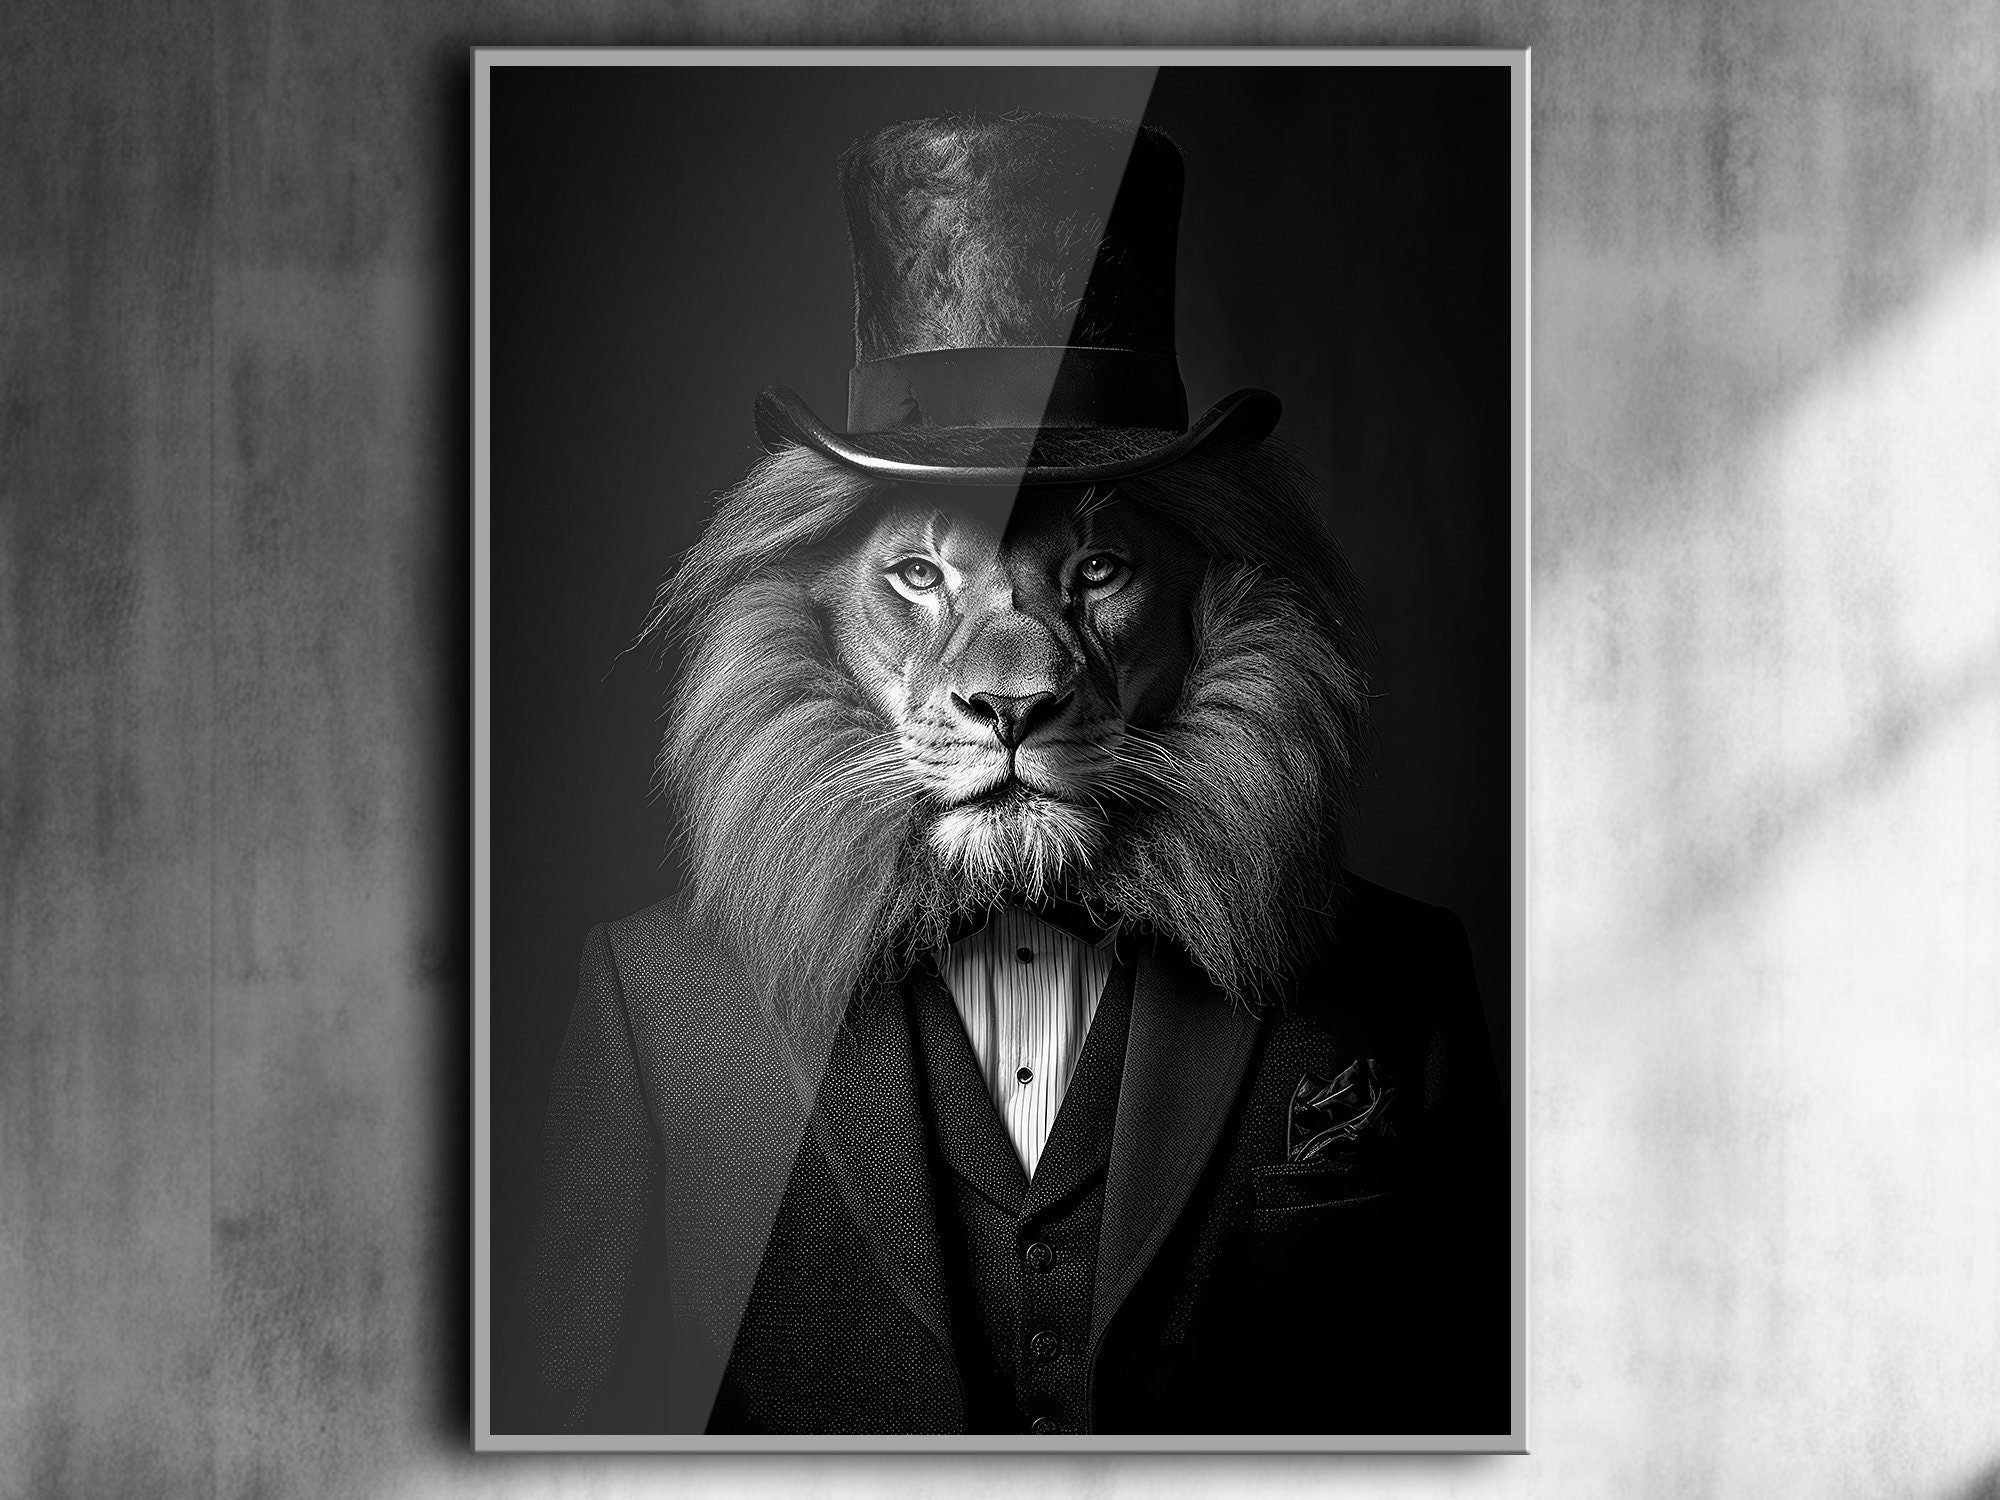 Portrait Lion Adulte Habillé Comme Un Roi Avec Une Couronne Ia